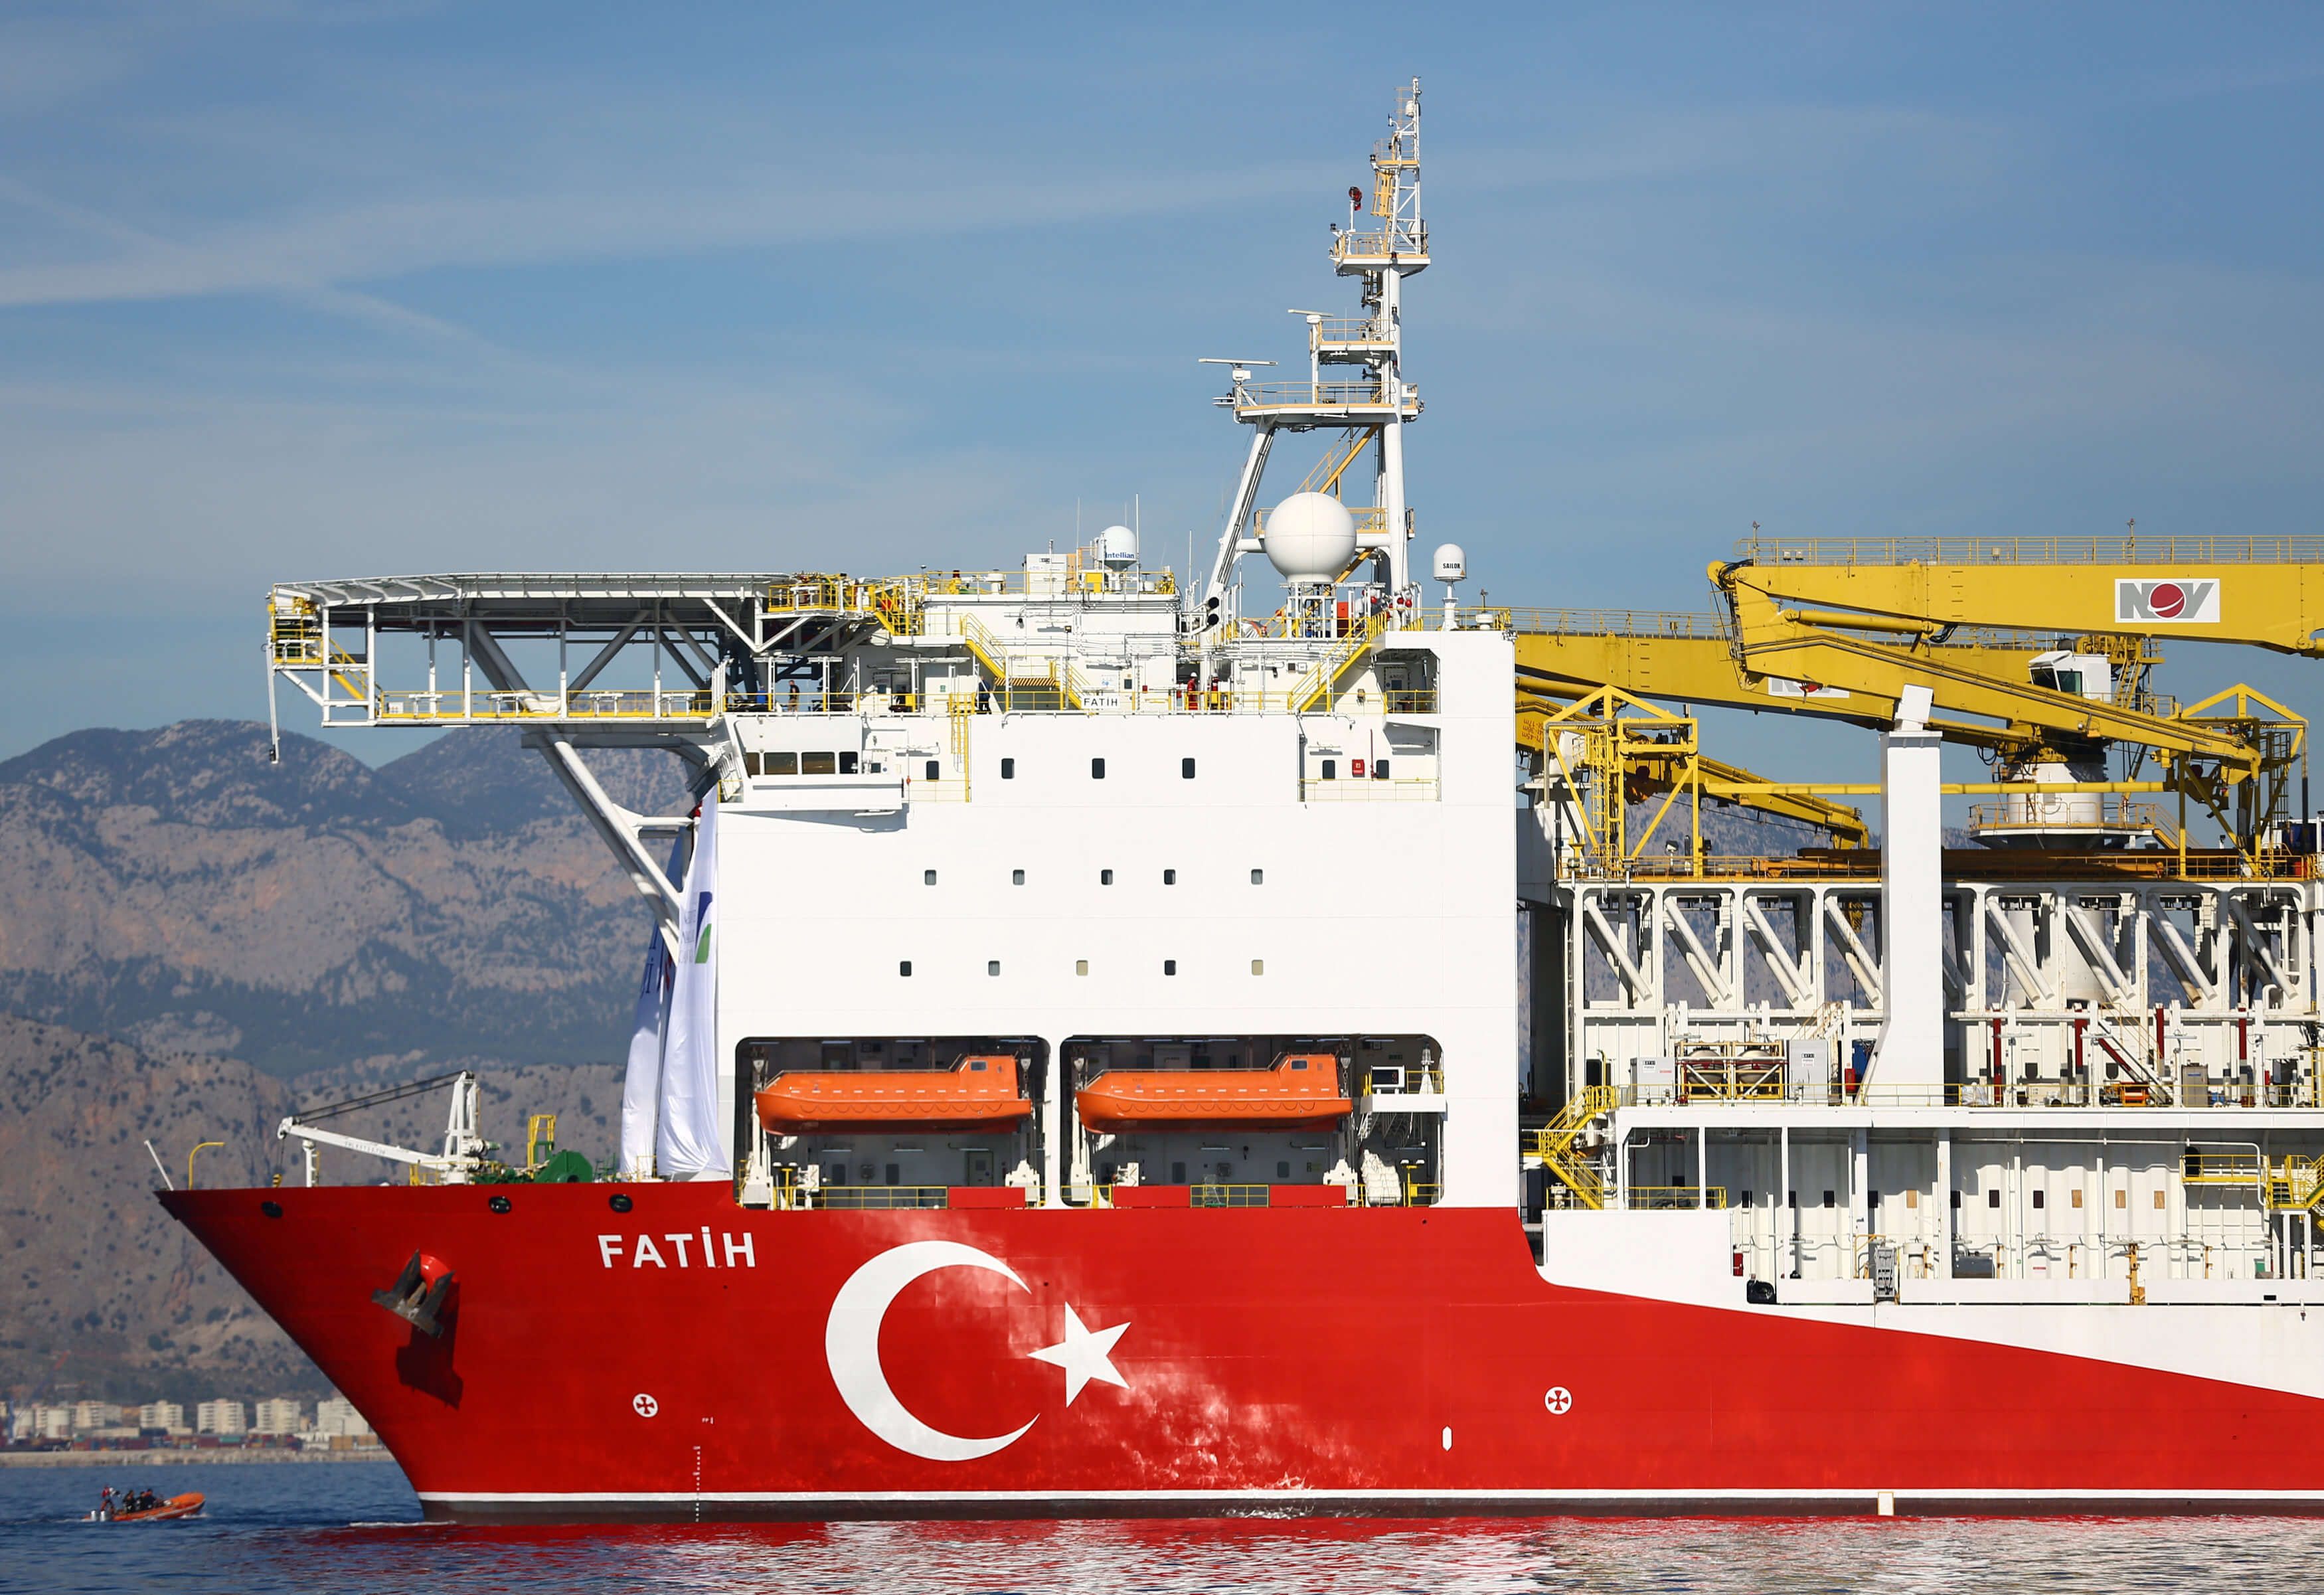 Αυστηρό μήνυμα ΗΠΑ προς Τουρκία: Προκλητικό βήμα η γεώτρηση στην κυπριακή ΑΟΖ